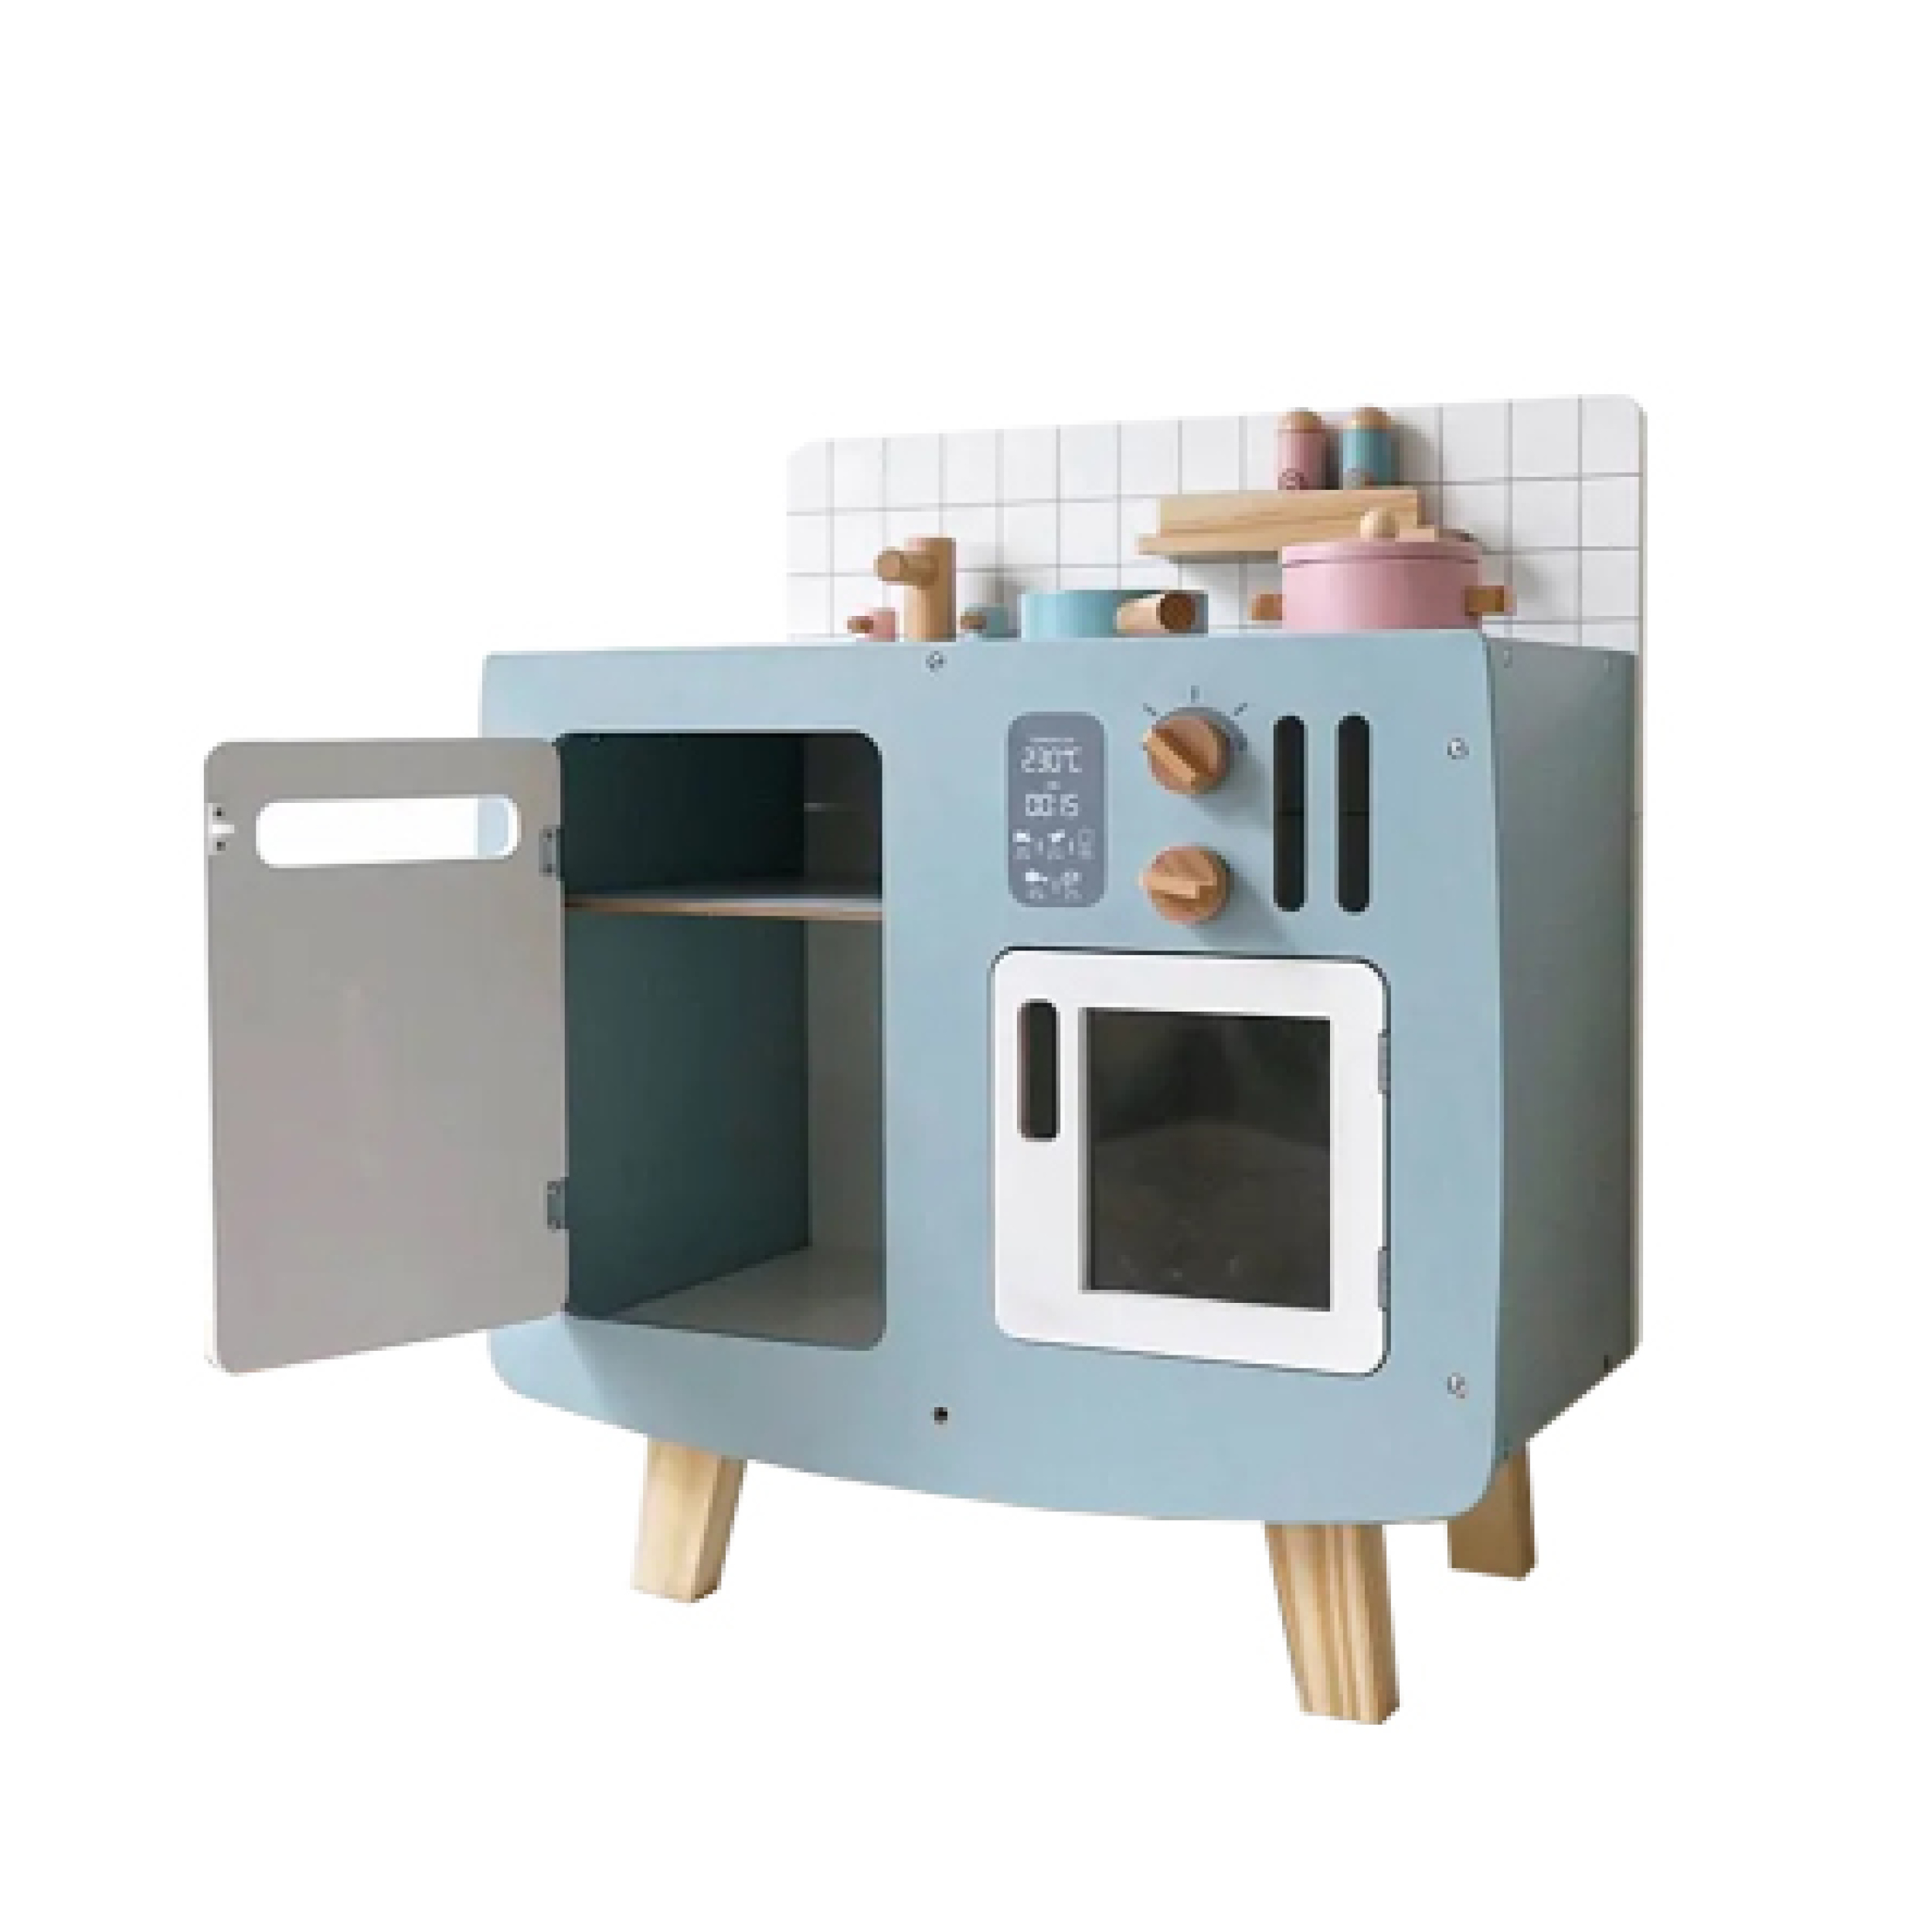 Modrá retro dětská kuchyňka Emma